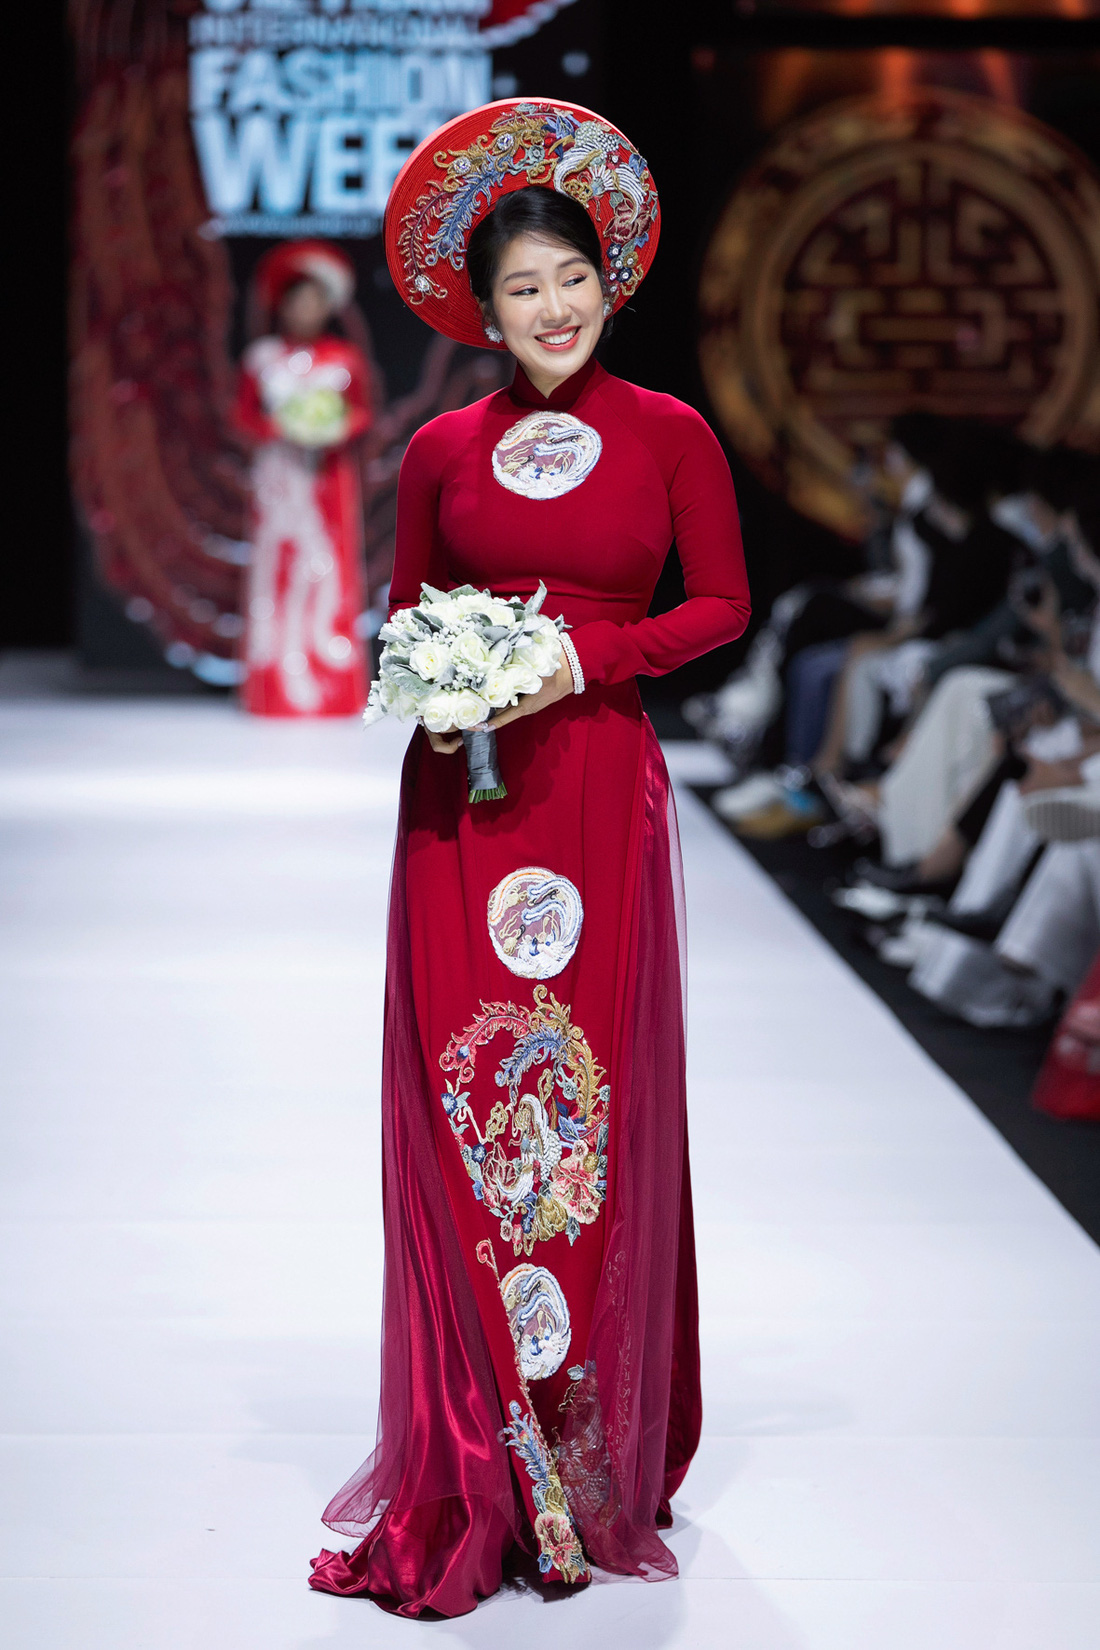 Hoa hậu Khánh Vân làm vedette, NSND Hồng Vân làm người mẫu catwalk cho nhà thiết kế Minh Châu - Ảnh 5.